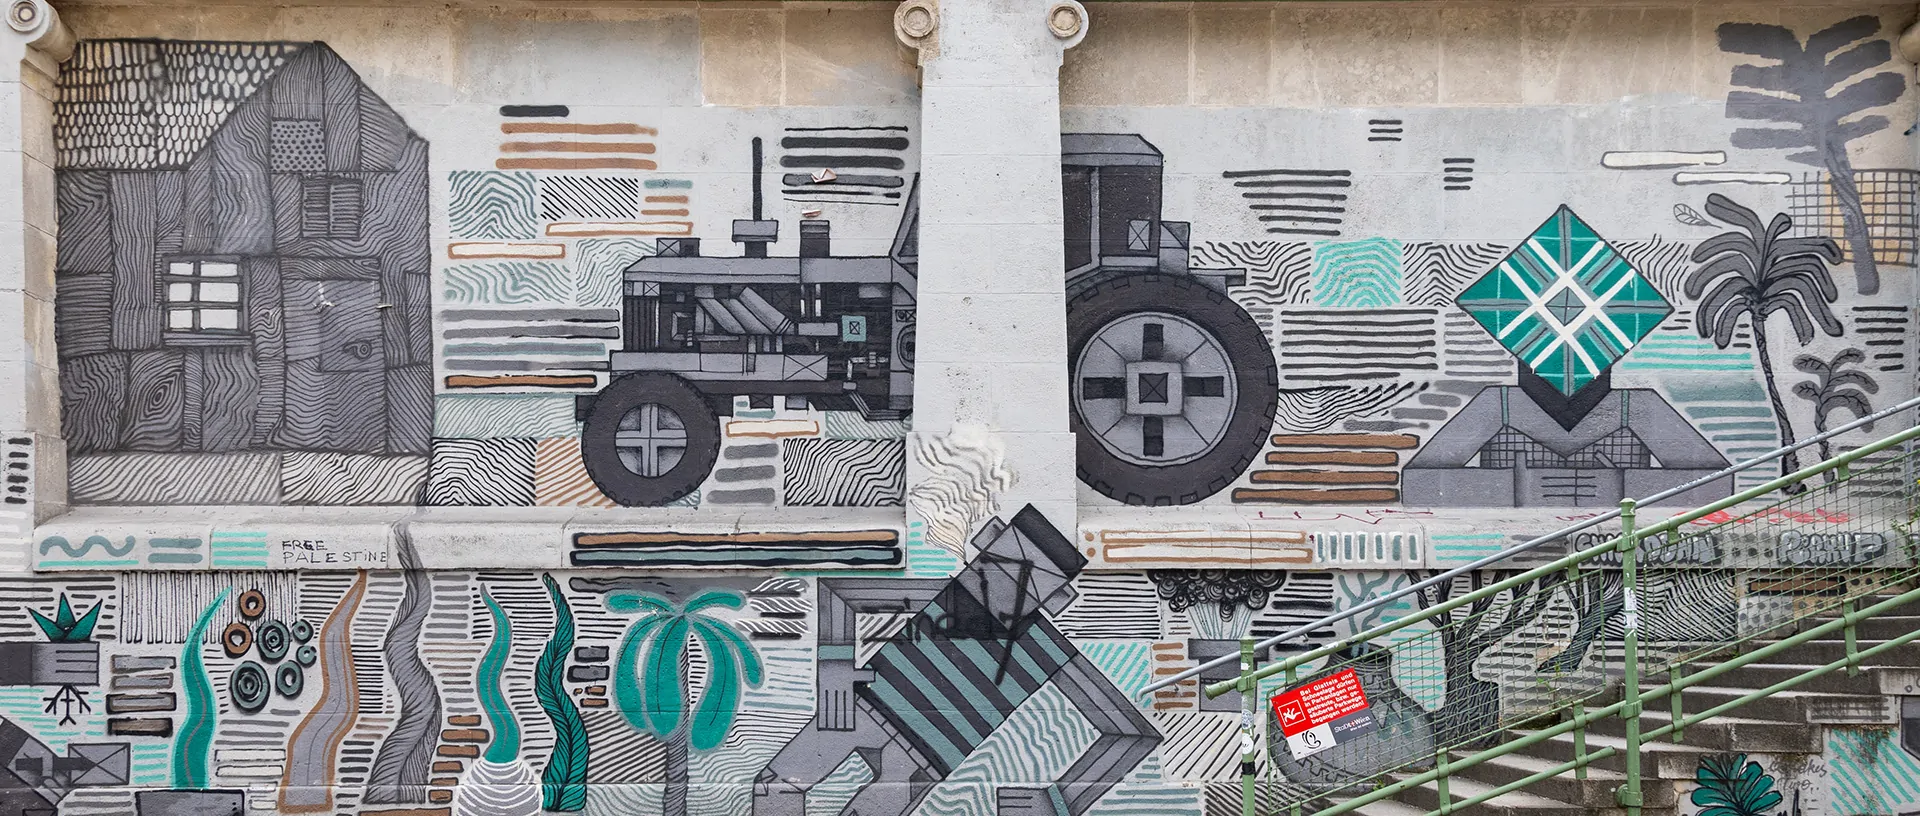 Welche gesellschaftspolitischen Themen bildet die Graffiti-Strecke am Wiener Donaukanal ab? Das untersuchen neue Forschungen, gefördert von der Österreichischen Akademie der Wissenschaften. © ÖAW